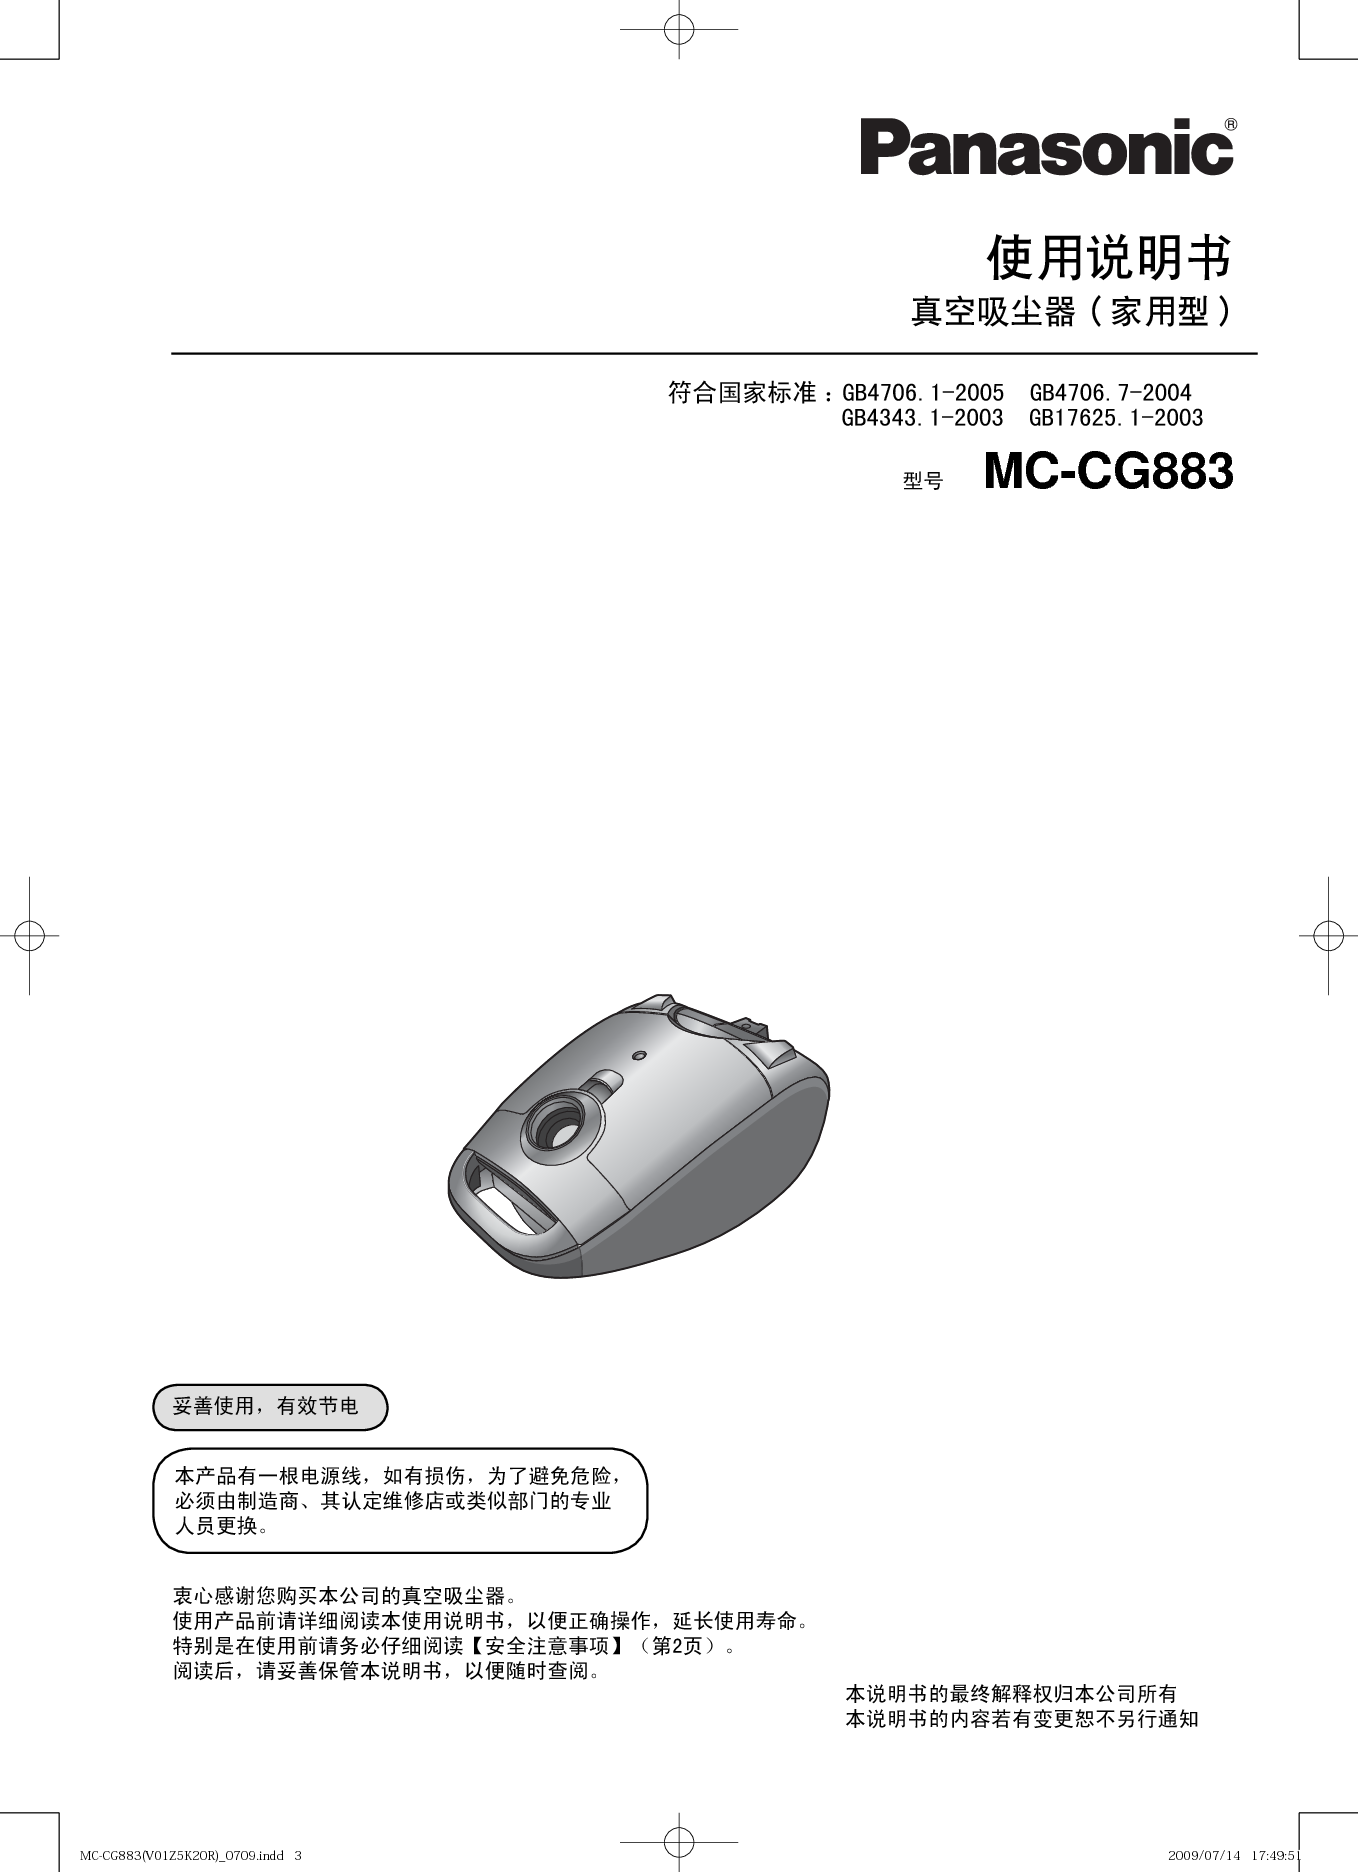 松下 Panasonic MC-CG883 说明书 第2页